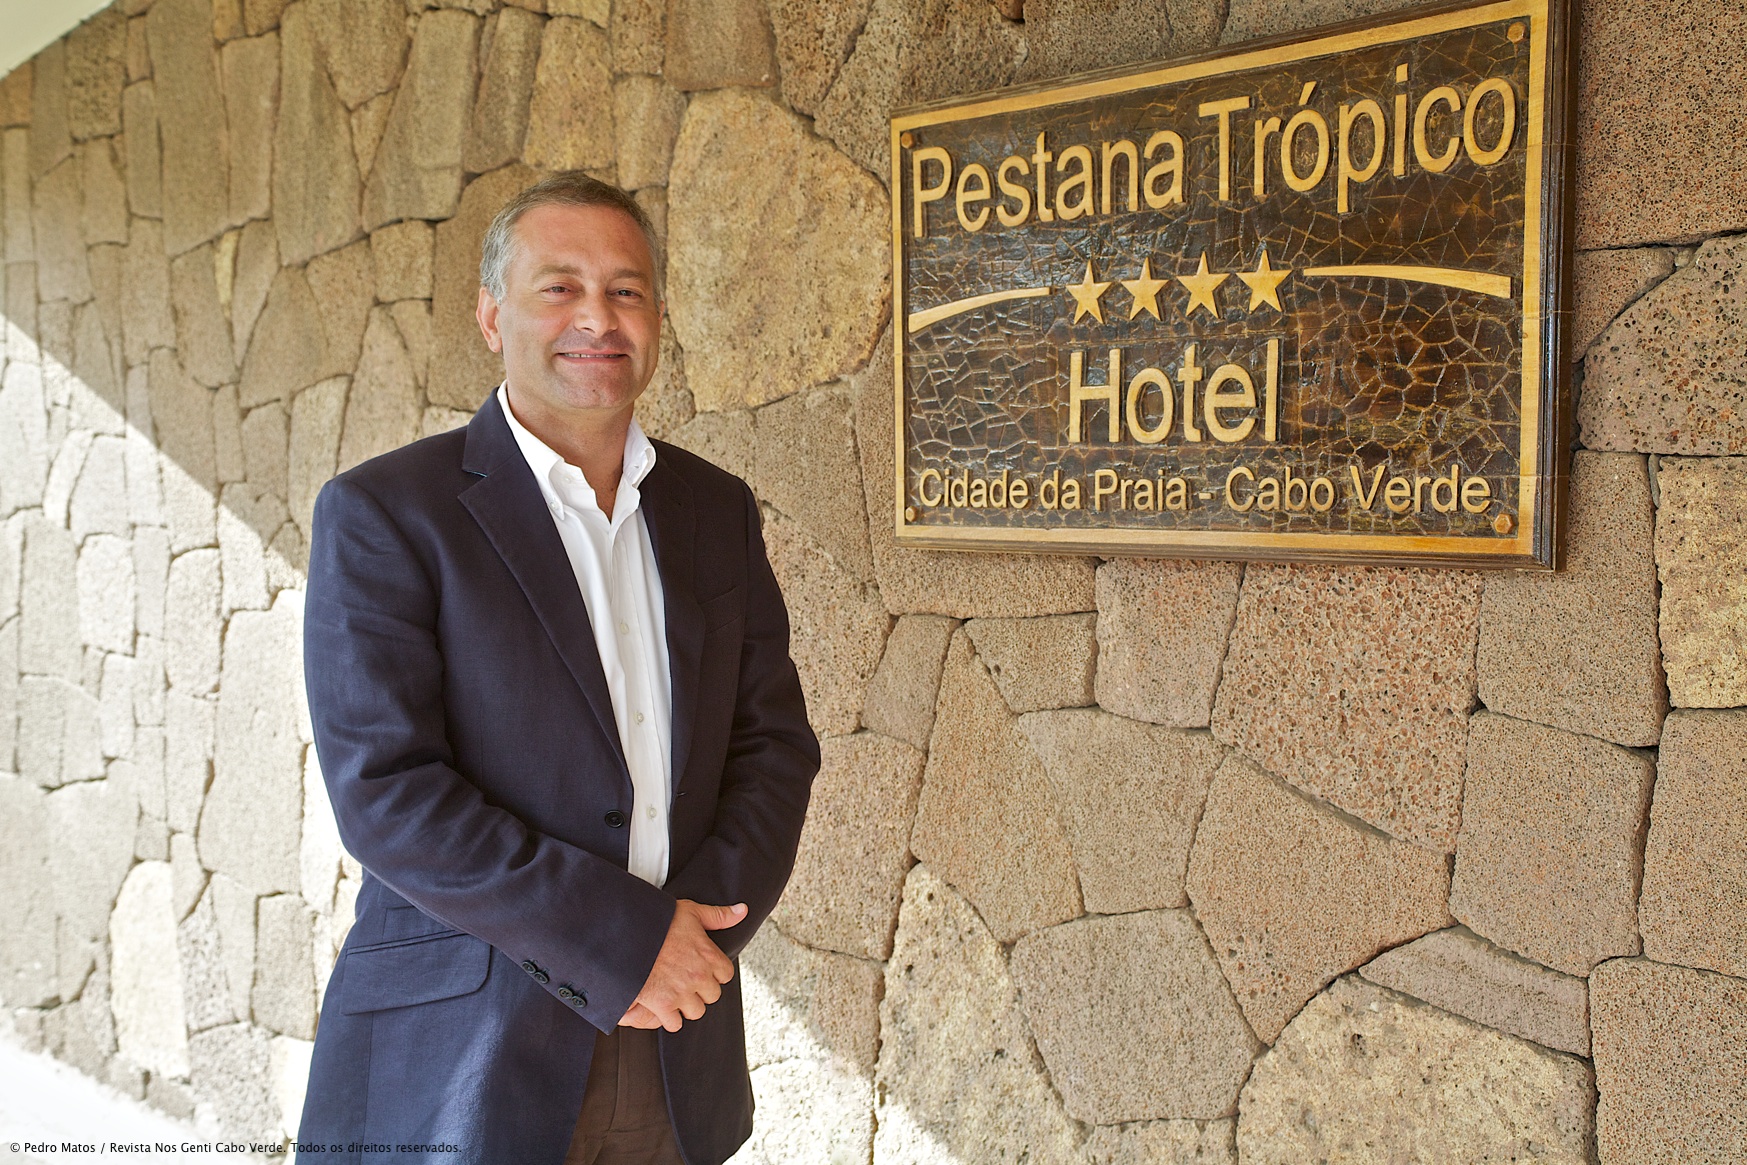 Hotel Trópico Pestana: Uma referência na cidade da Praia